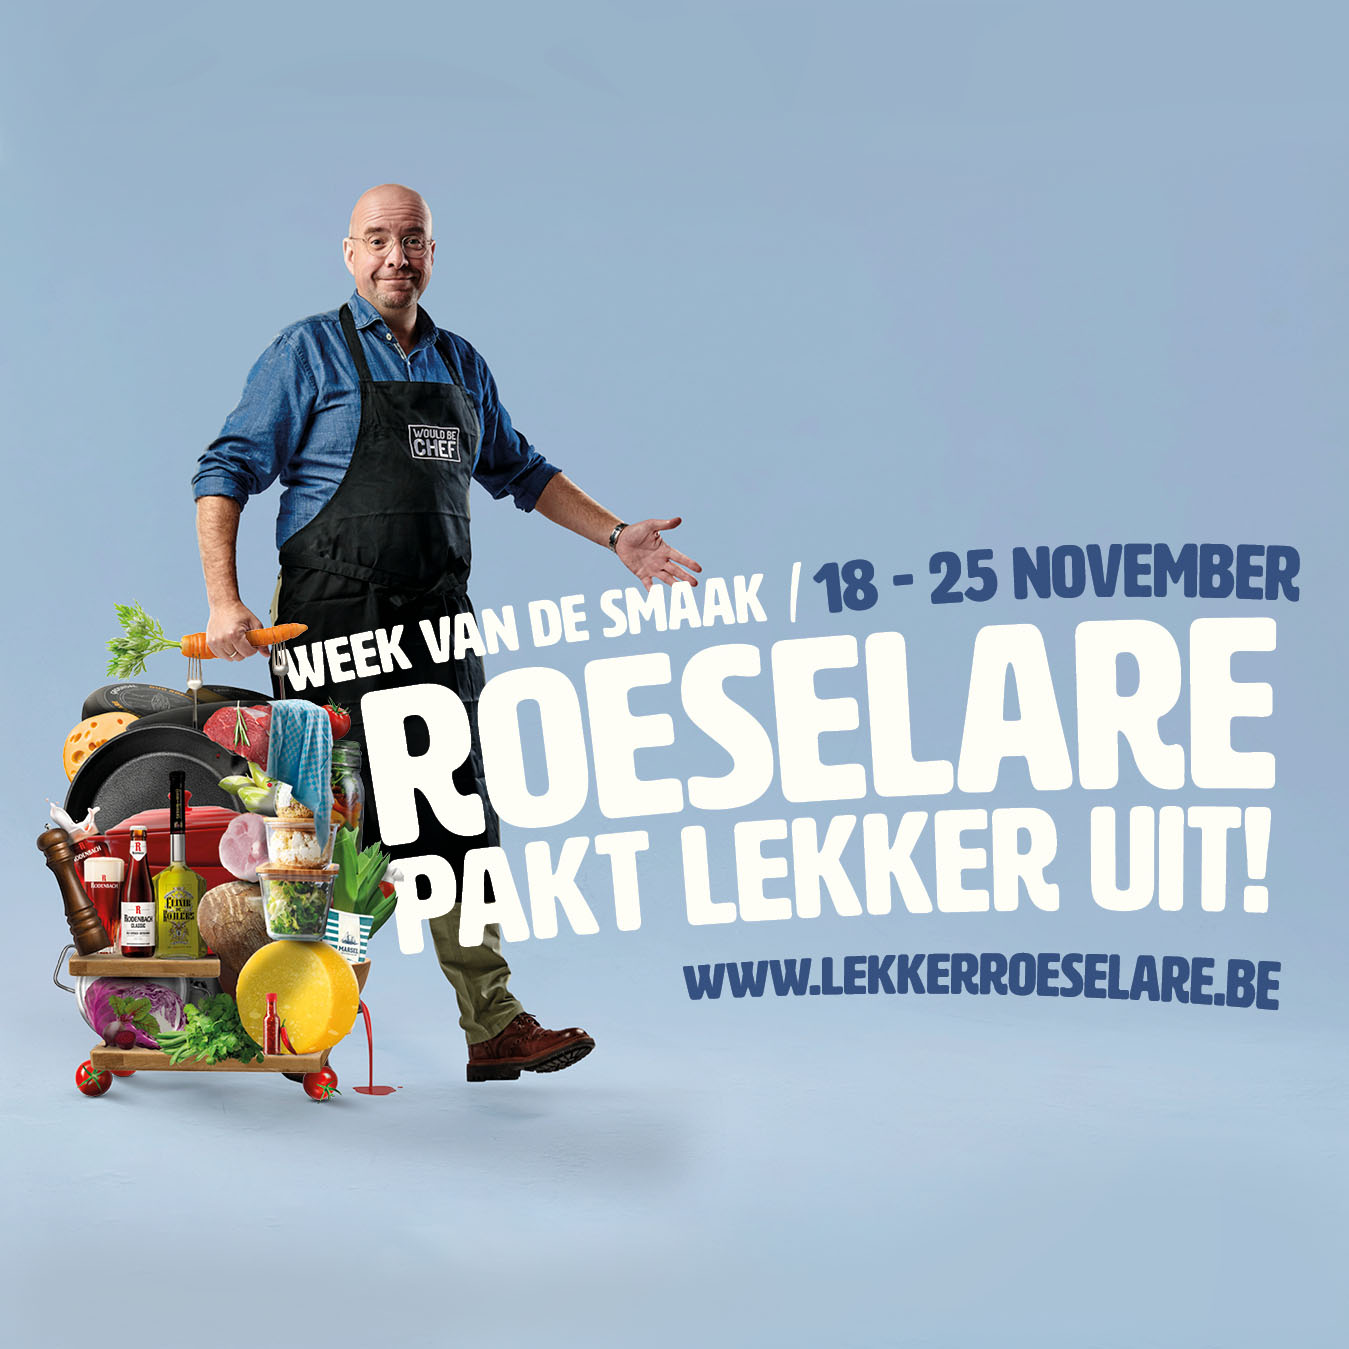 Ik ben ambassadeur van de week van de Smaak in Roeselare!